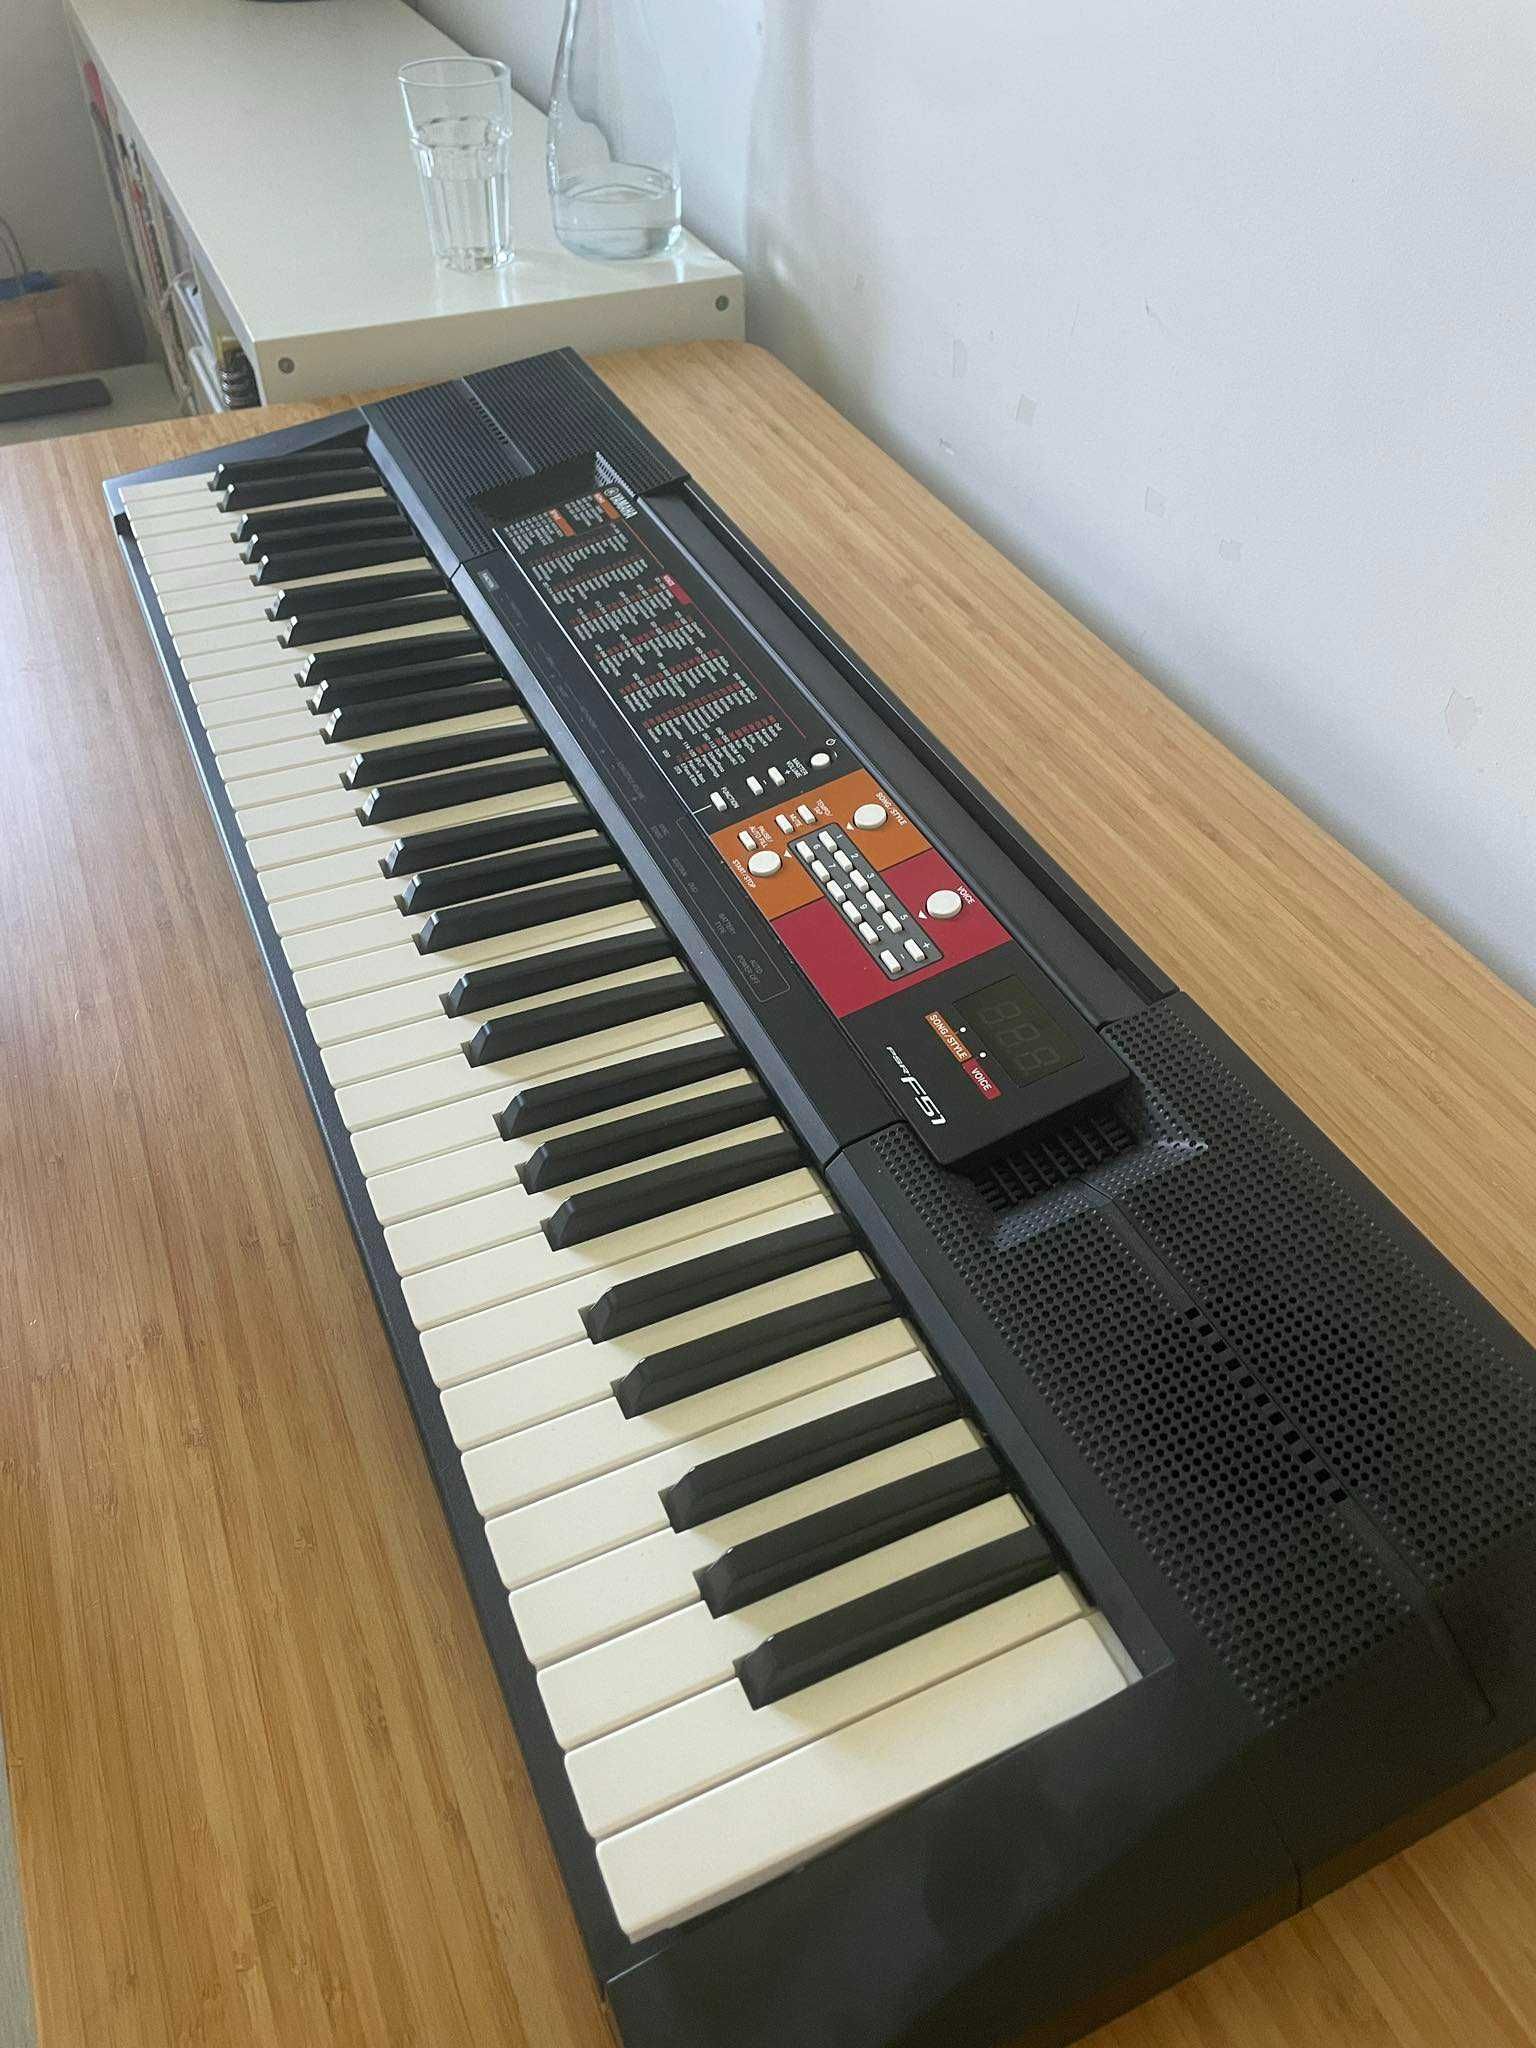 Keyboard Yamaha PSR F51